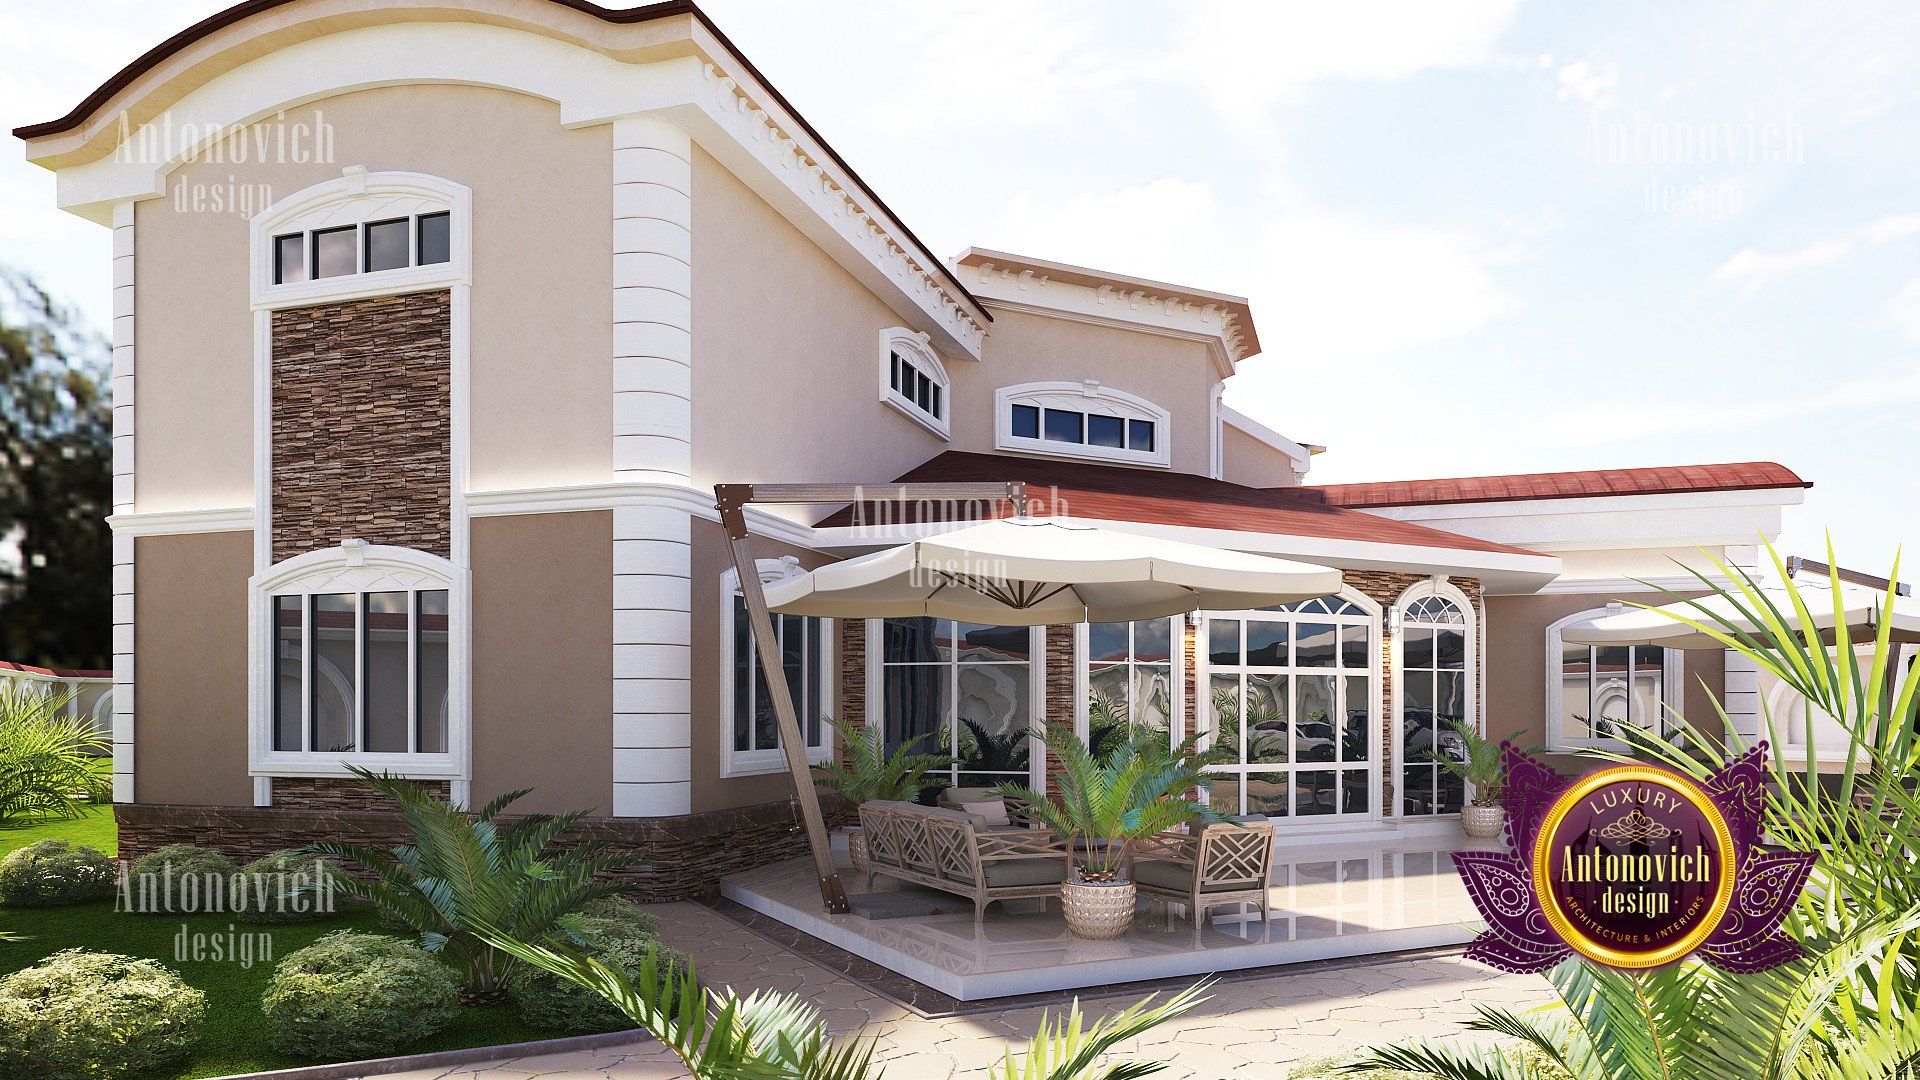 Luxury villa exterior design - luxury interior design ...